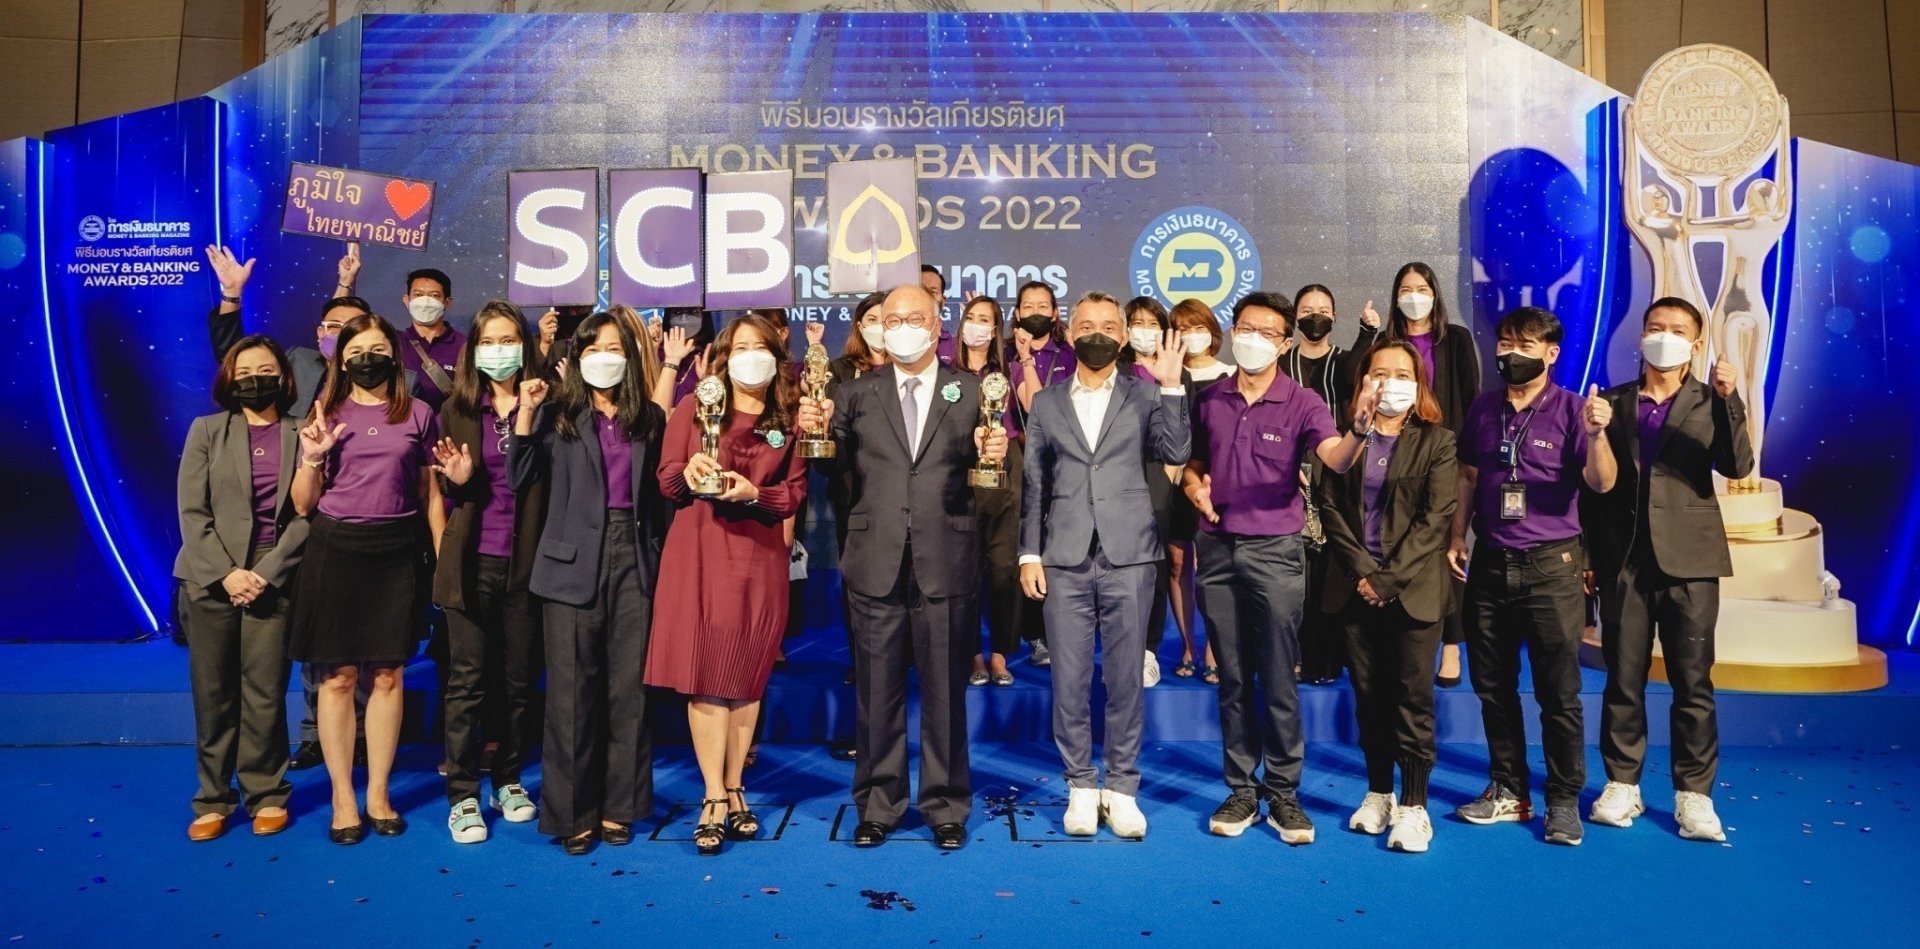 SCB รับ 3 รางวัลเกียรติยศจากงาน Money & Banking Awards 2022